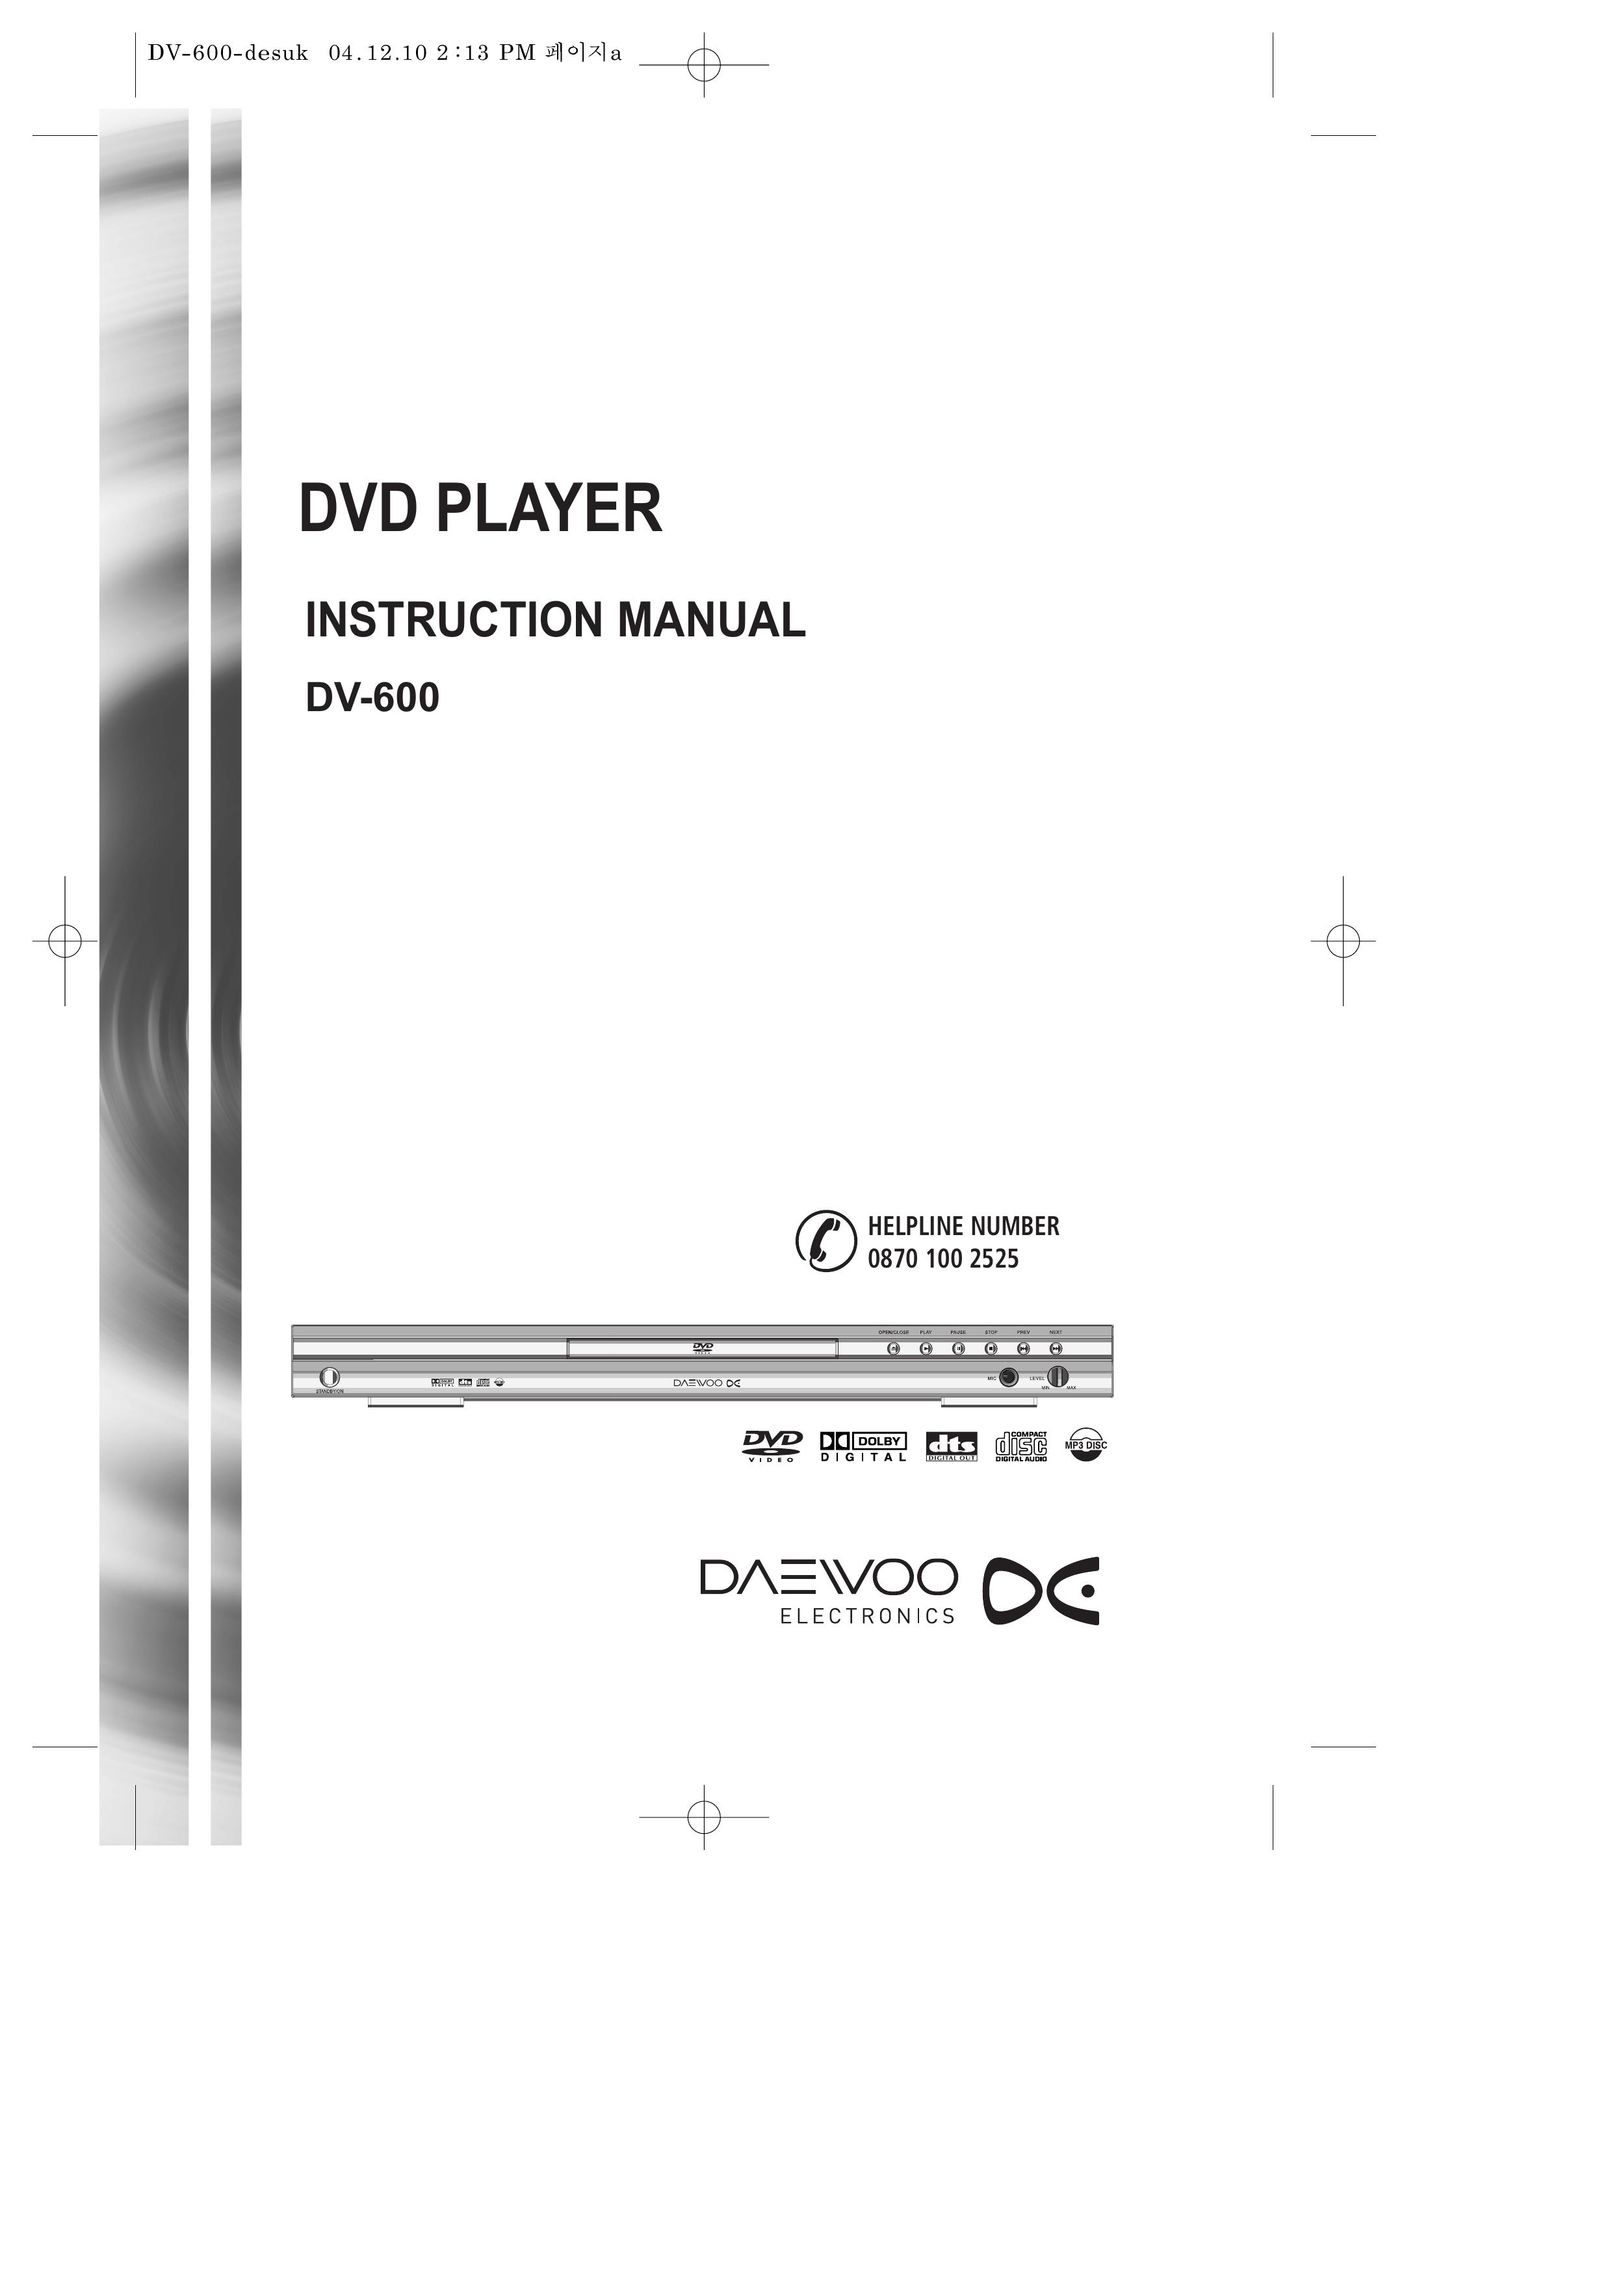 Daewoo DV-600 DVD Player User Manual